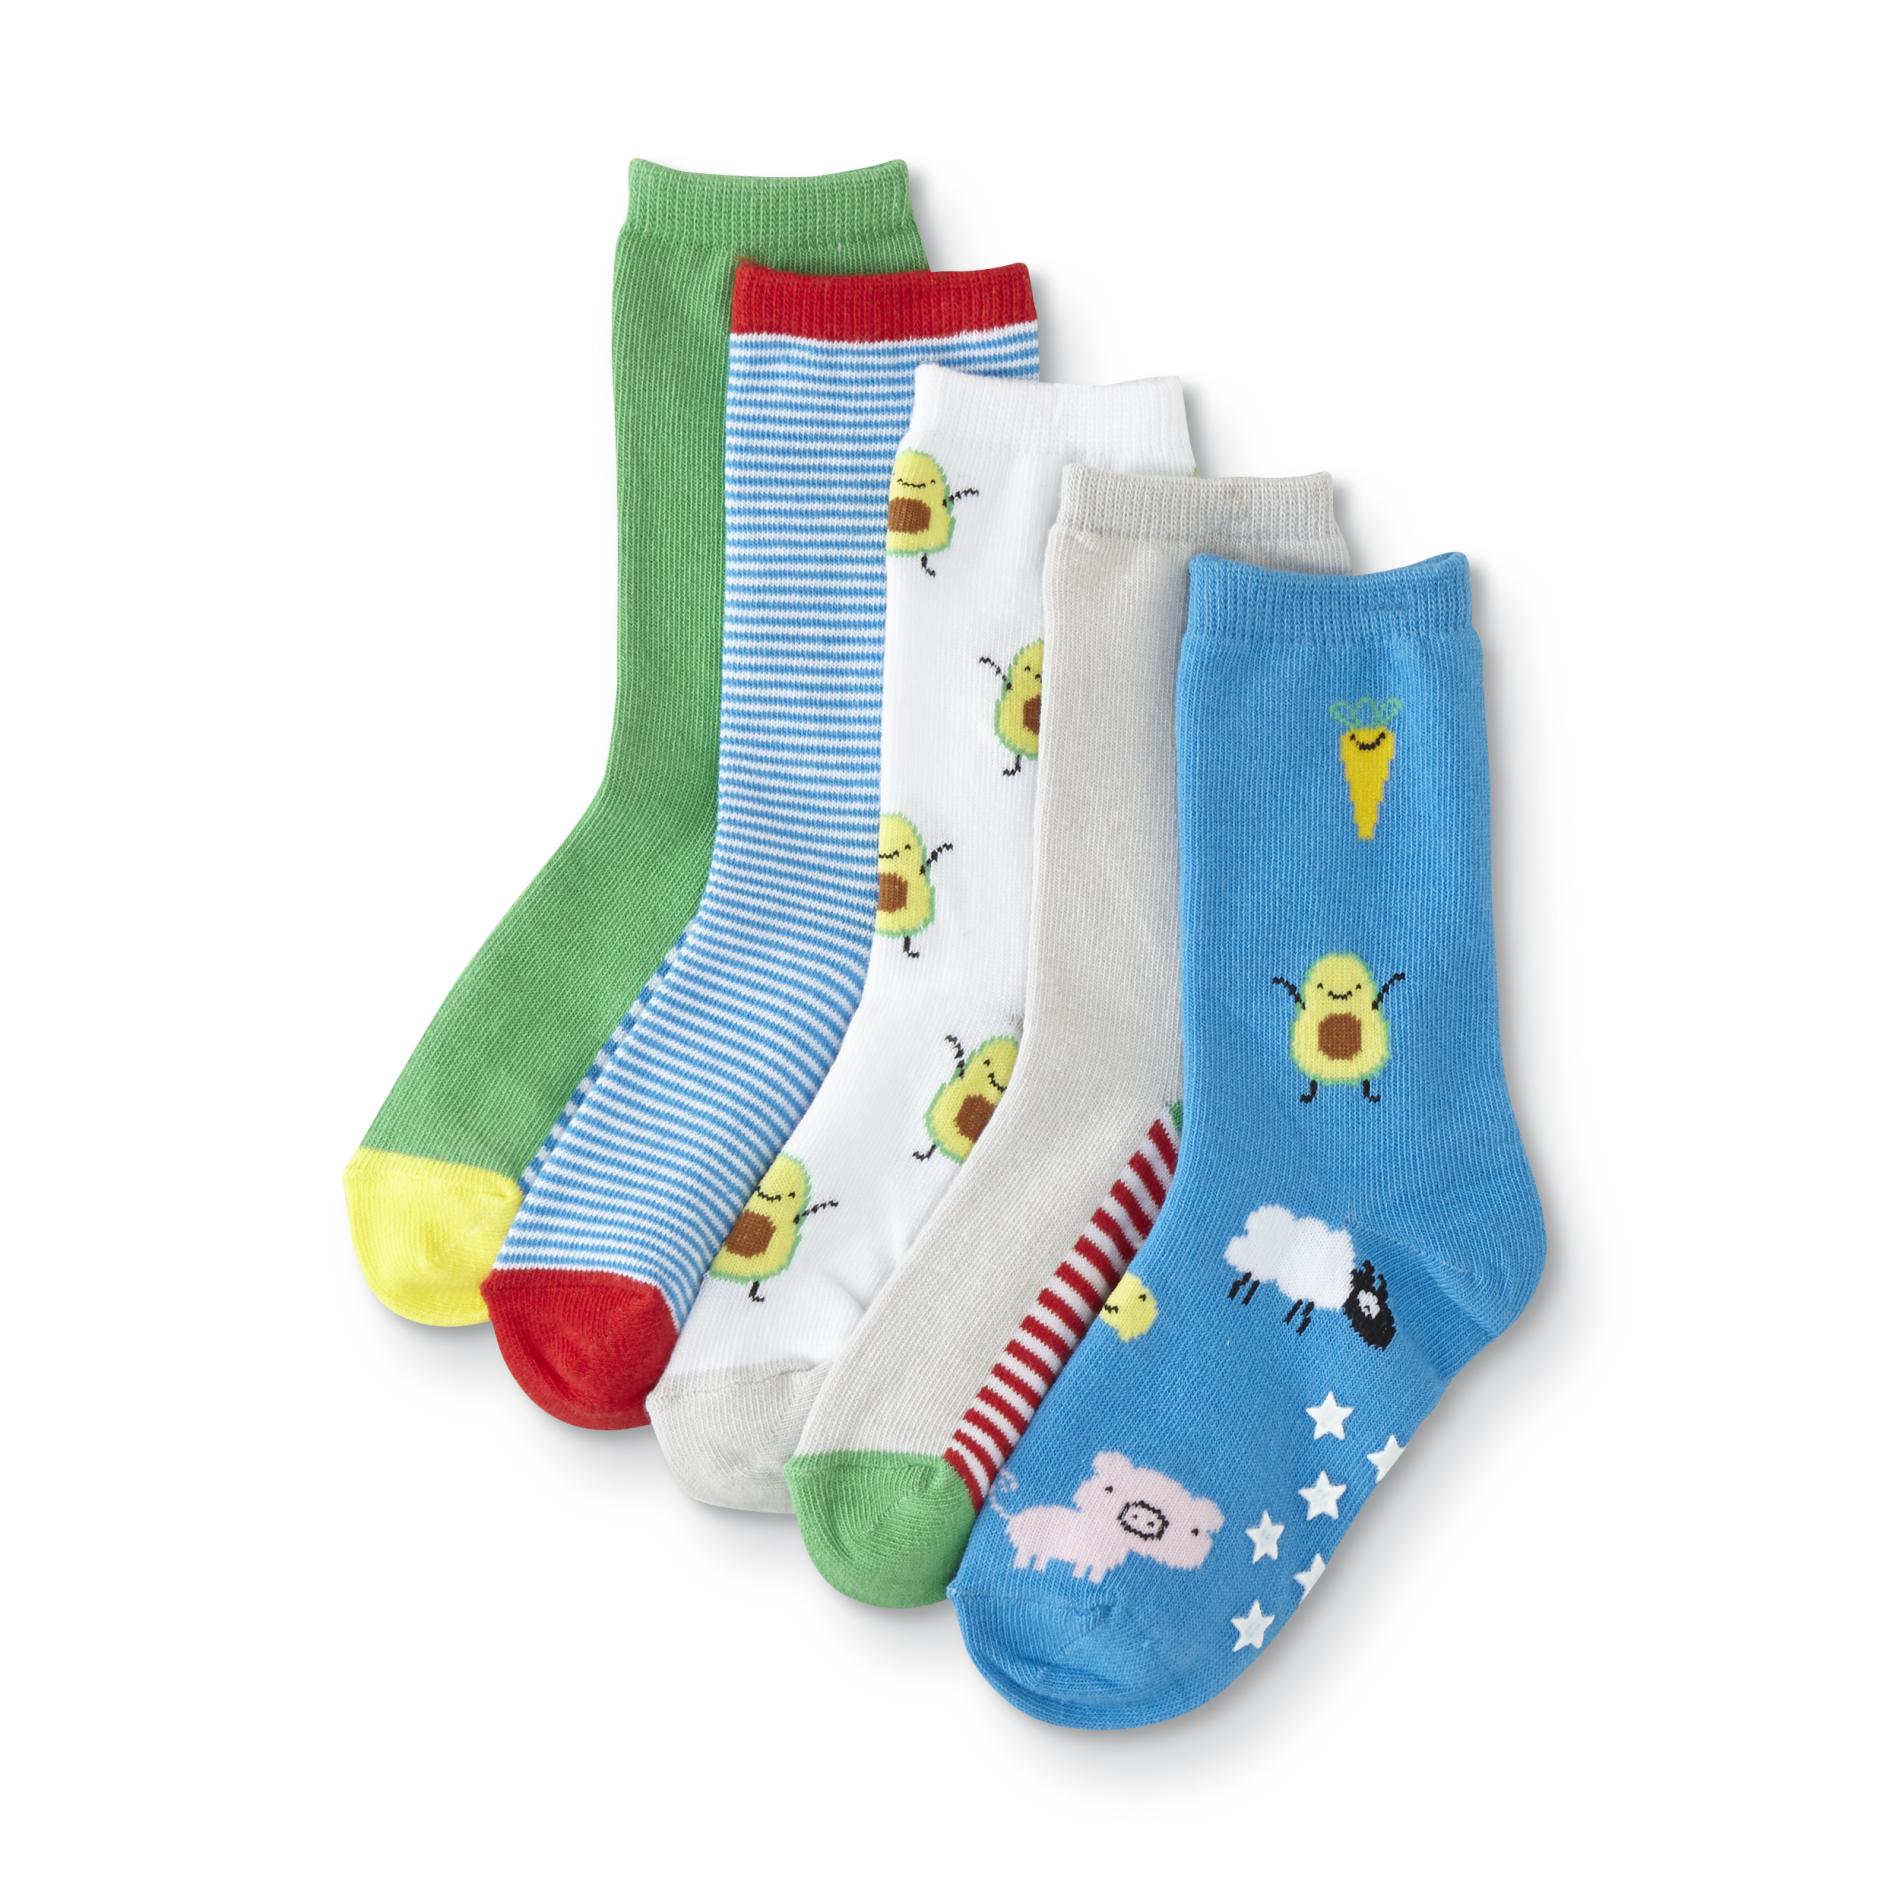 Joe Boxer Toddler Boys' 5-Pairs Crew Socks - Farm Animal/Avocado